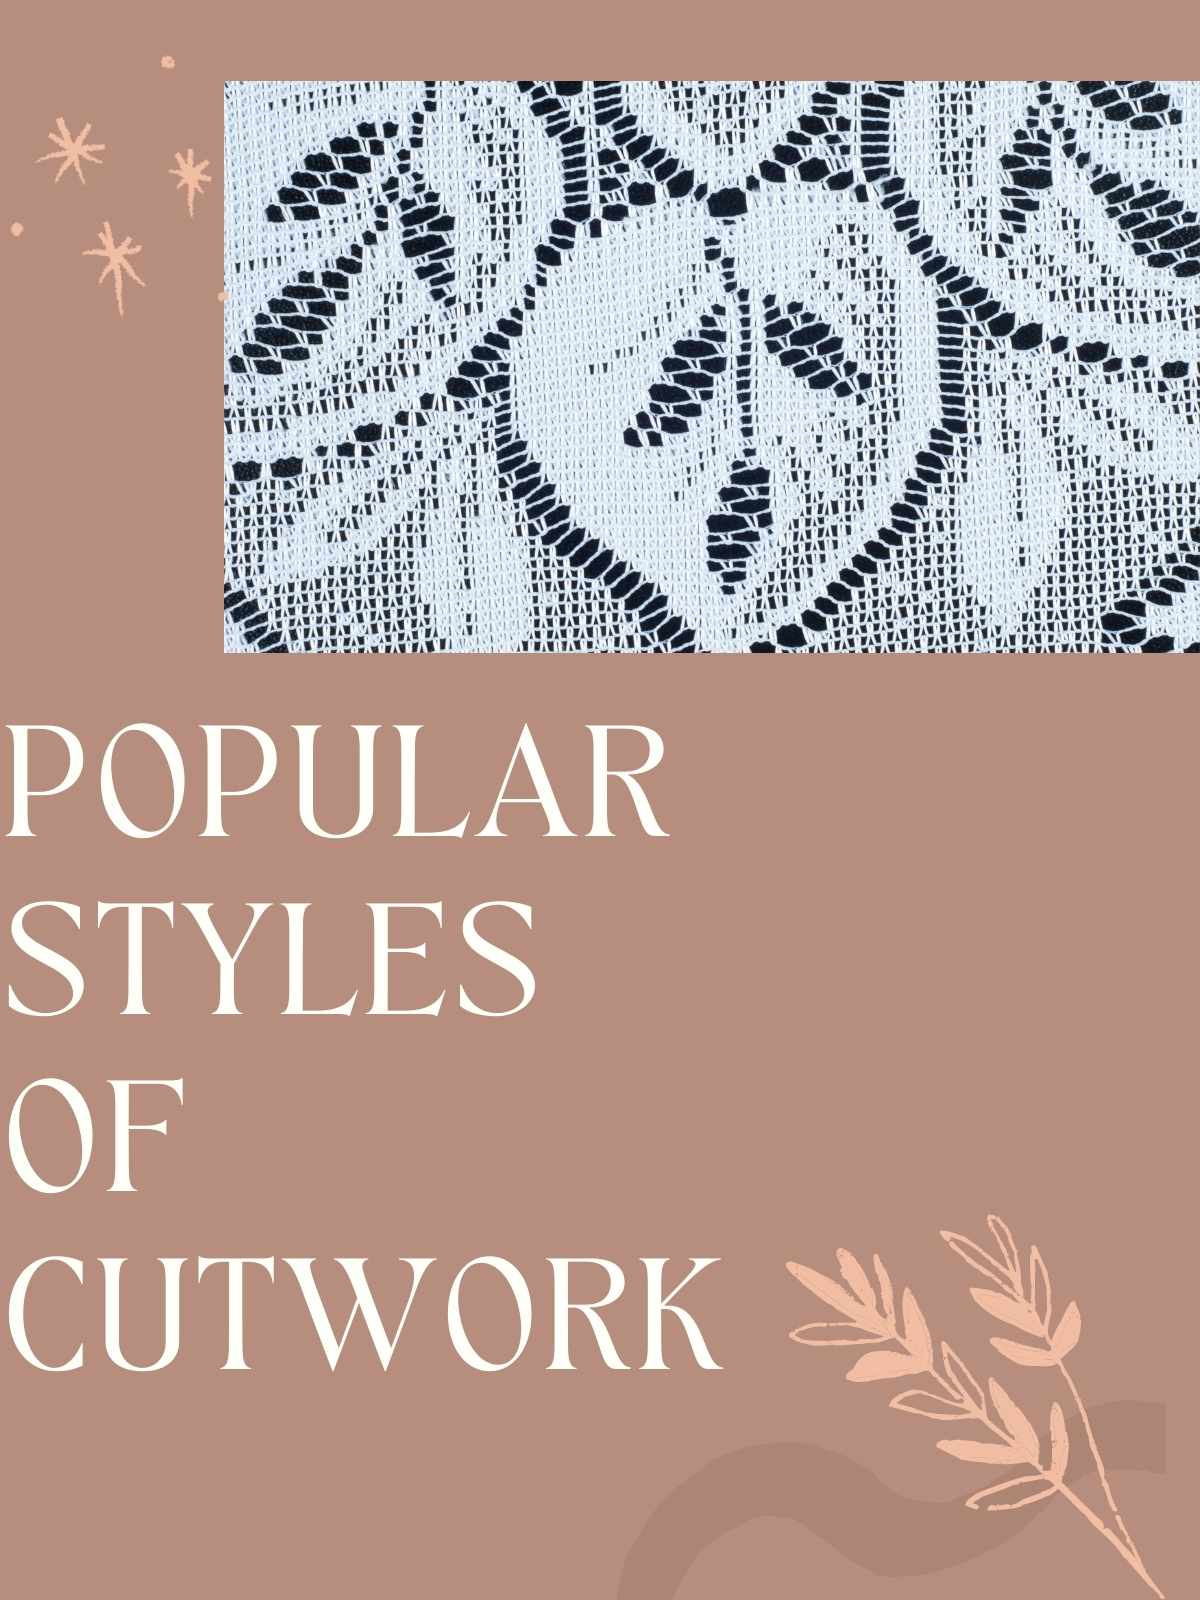 Popular styles of Cutwork